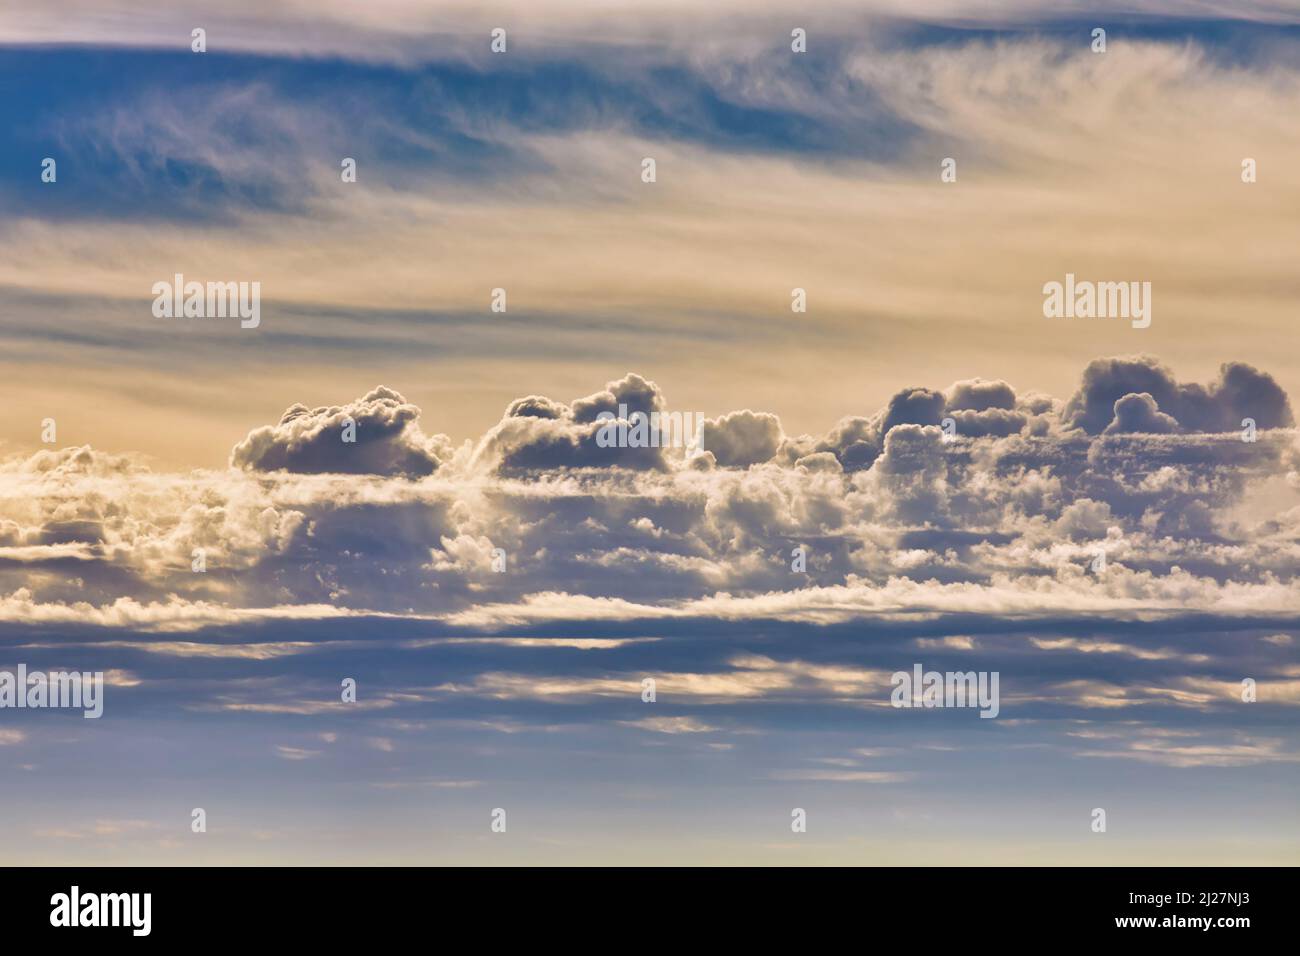 Nuvolosità con nuvola di Cumulus in mezzo all'immagine e nuvola di Cirrus in alto. Foto Stock